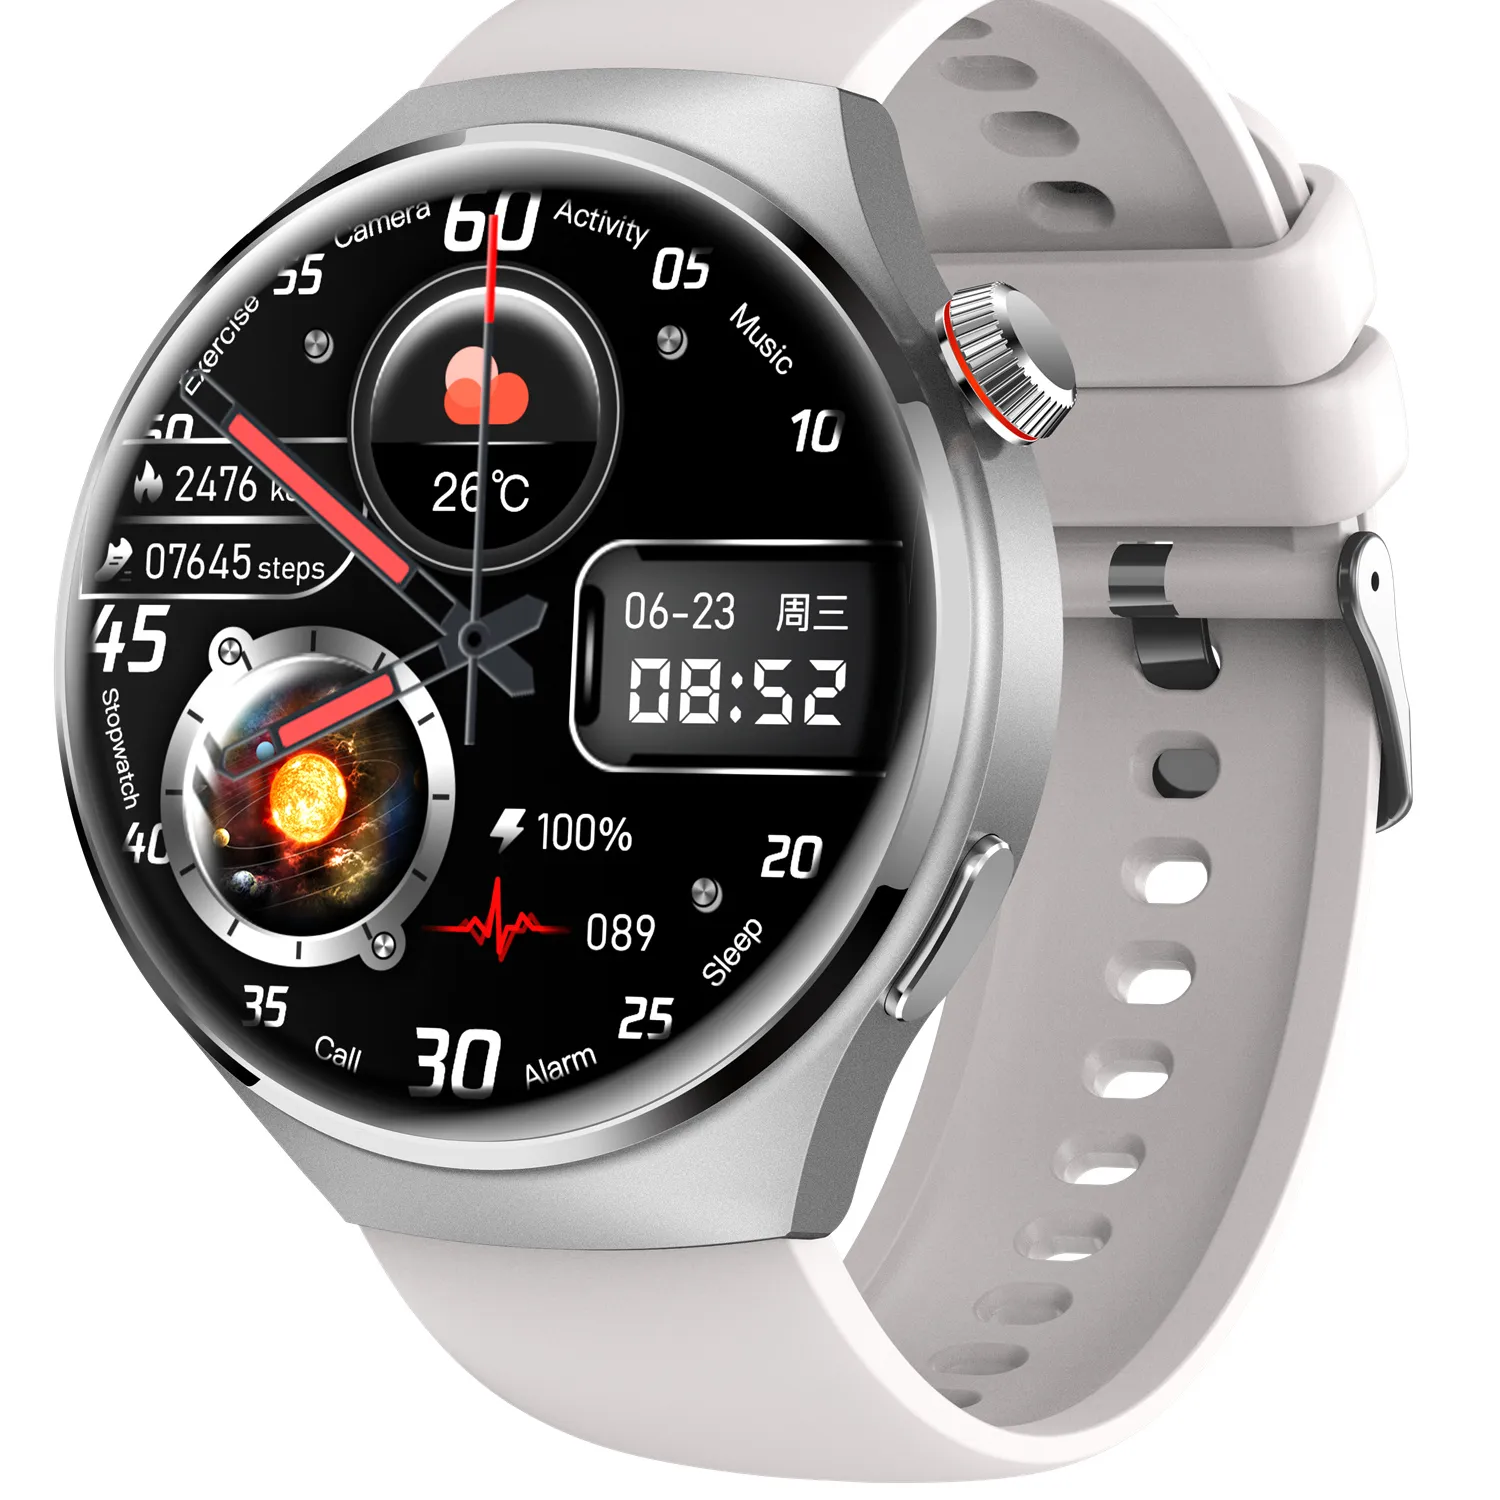 Nuovo MT26 smartwatch Bluetooth chiamata frequenza cardiaca pressione sanguigna schermo sportivo orologio